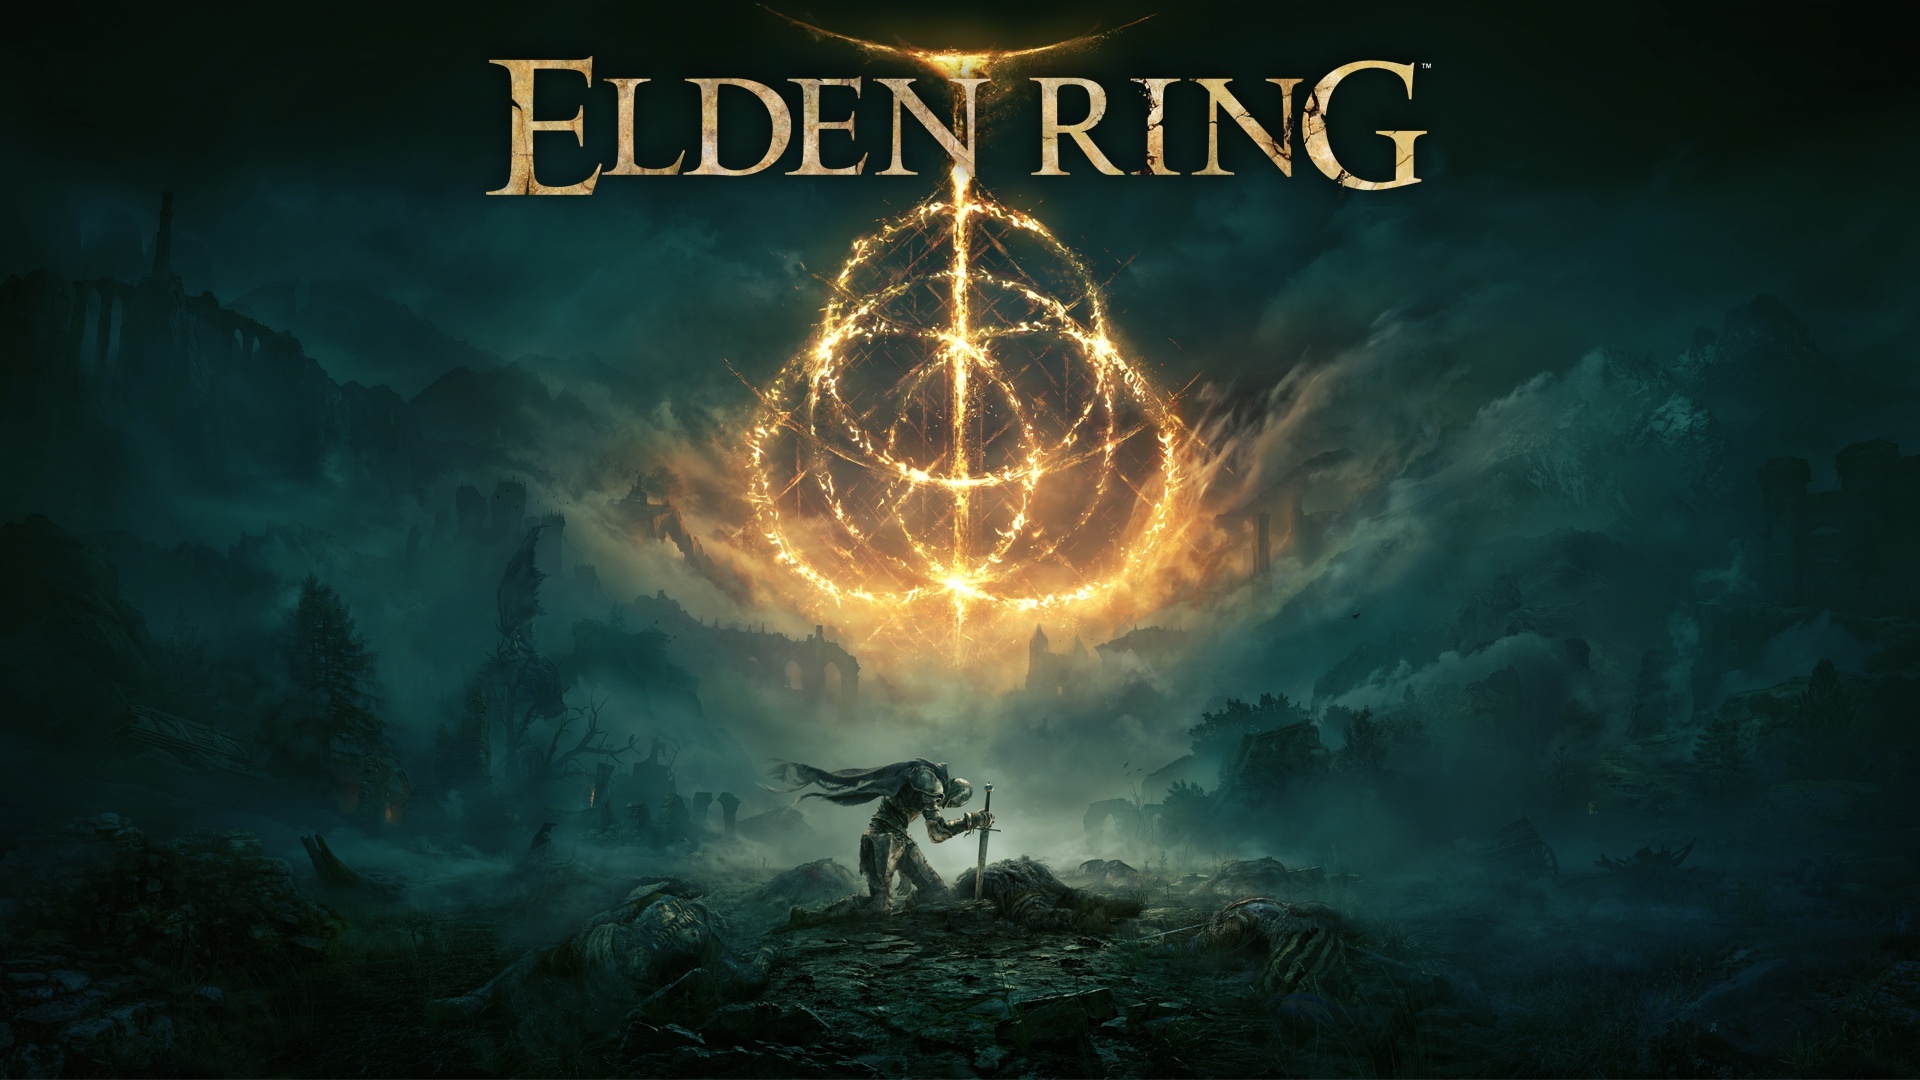 Elden Ring.. oh Elden Ring! Elden Ring Giant Bomb